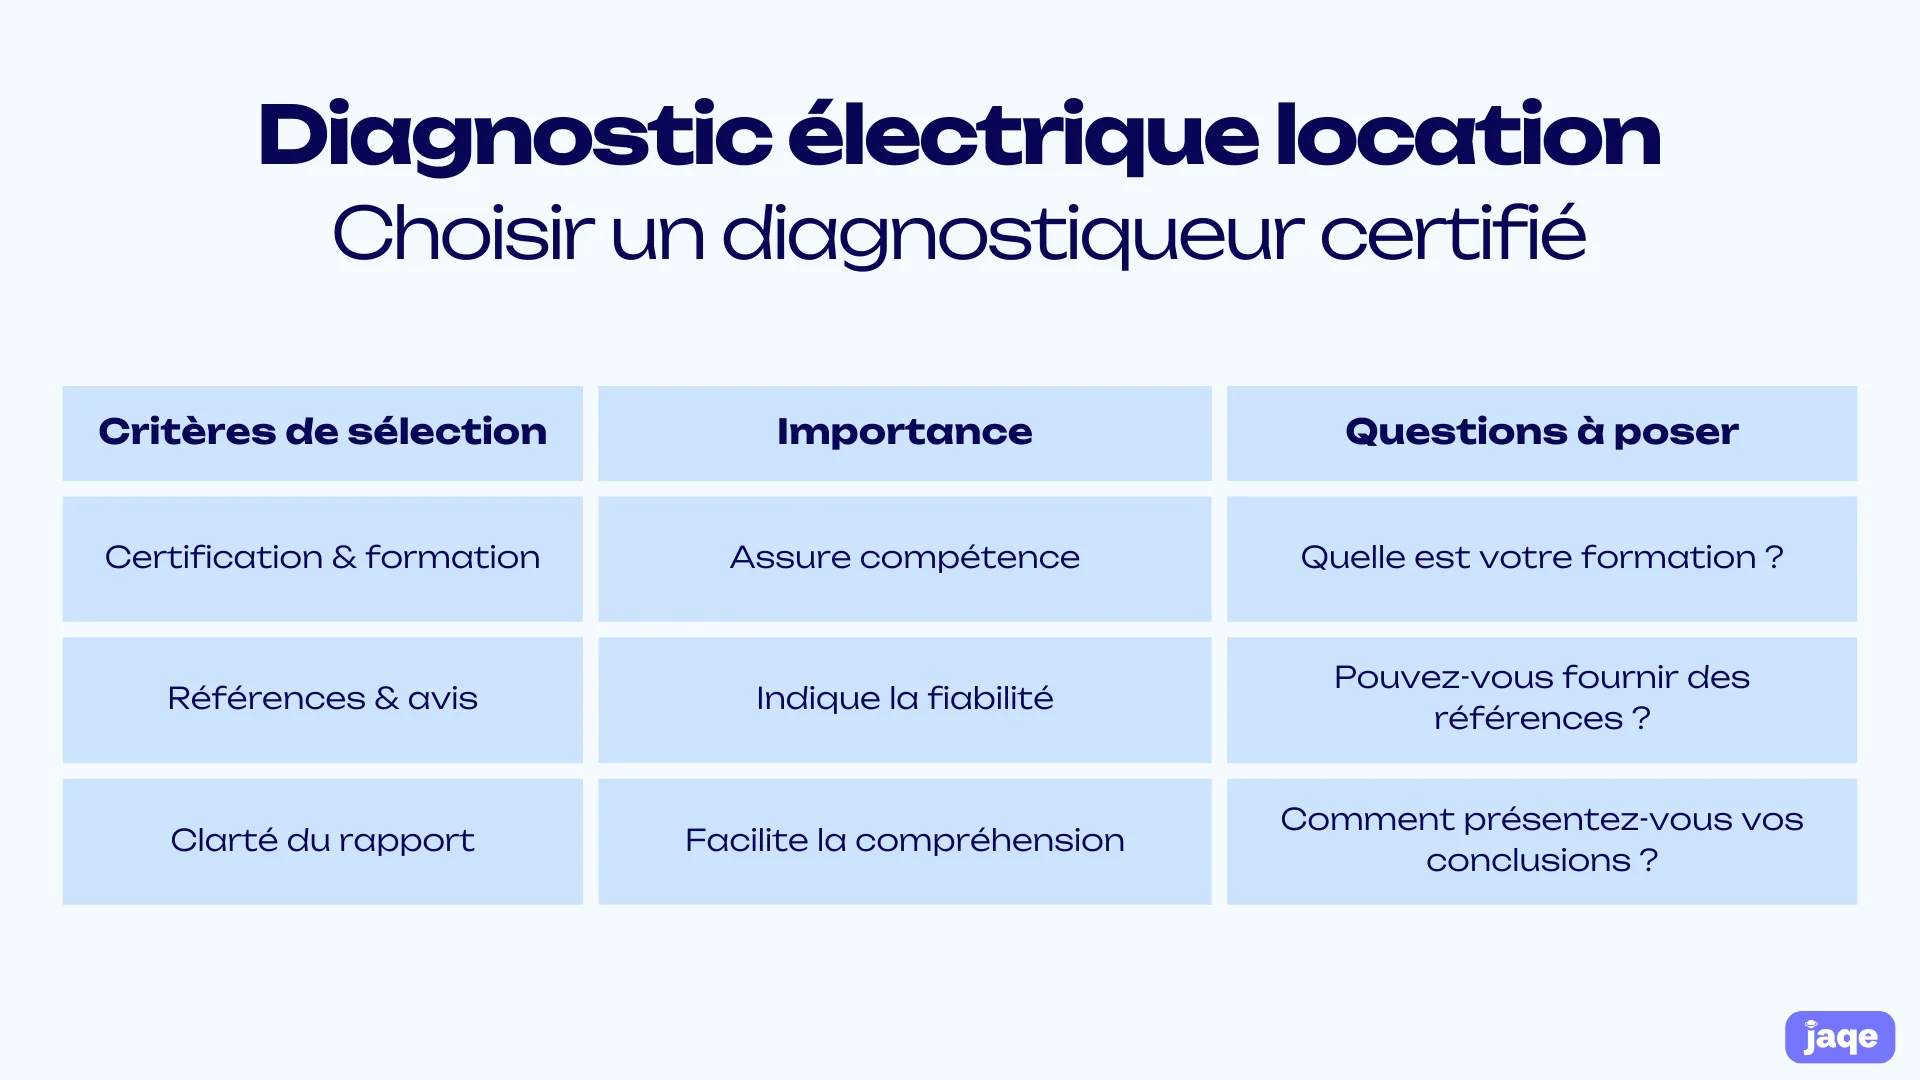 diagnostic elecctrique location choisir un diagnostiqueur certifie